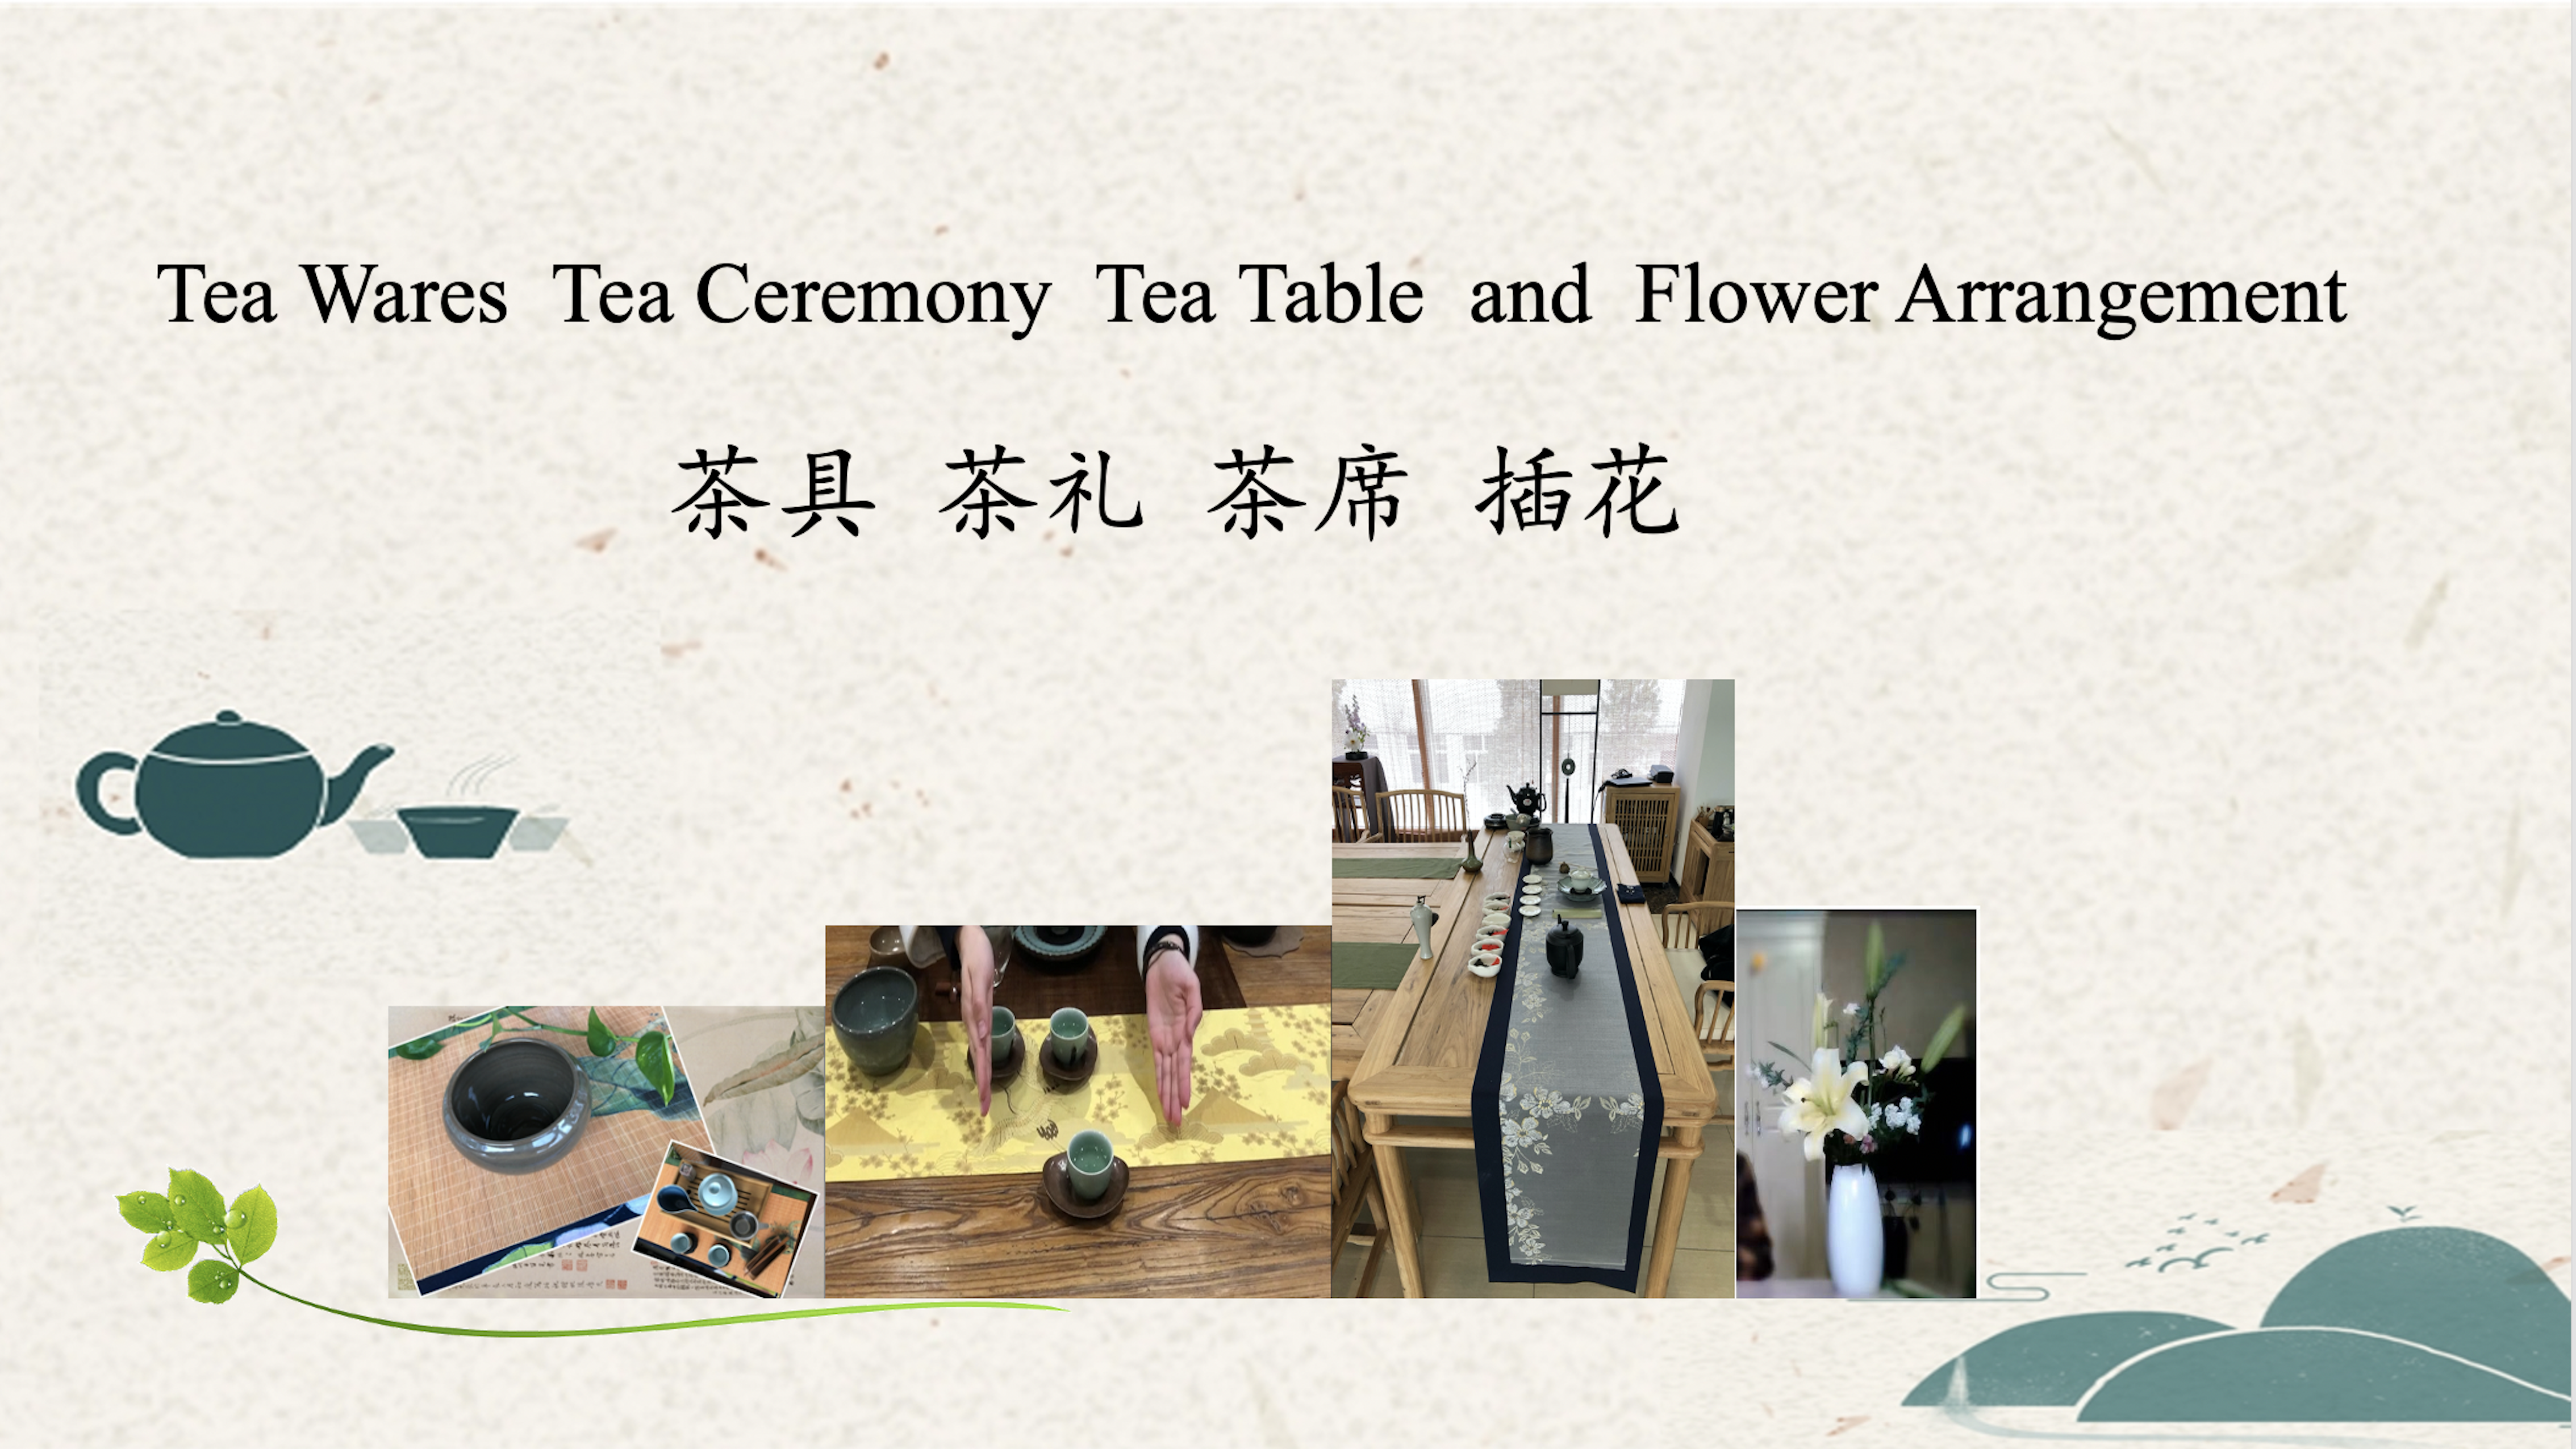 Artículos, rituales y asientos de té y arreglos florales